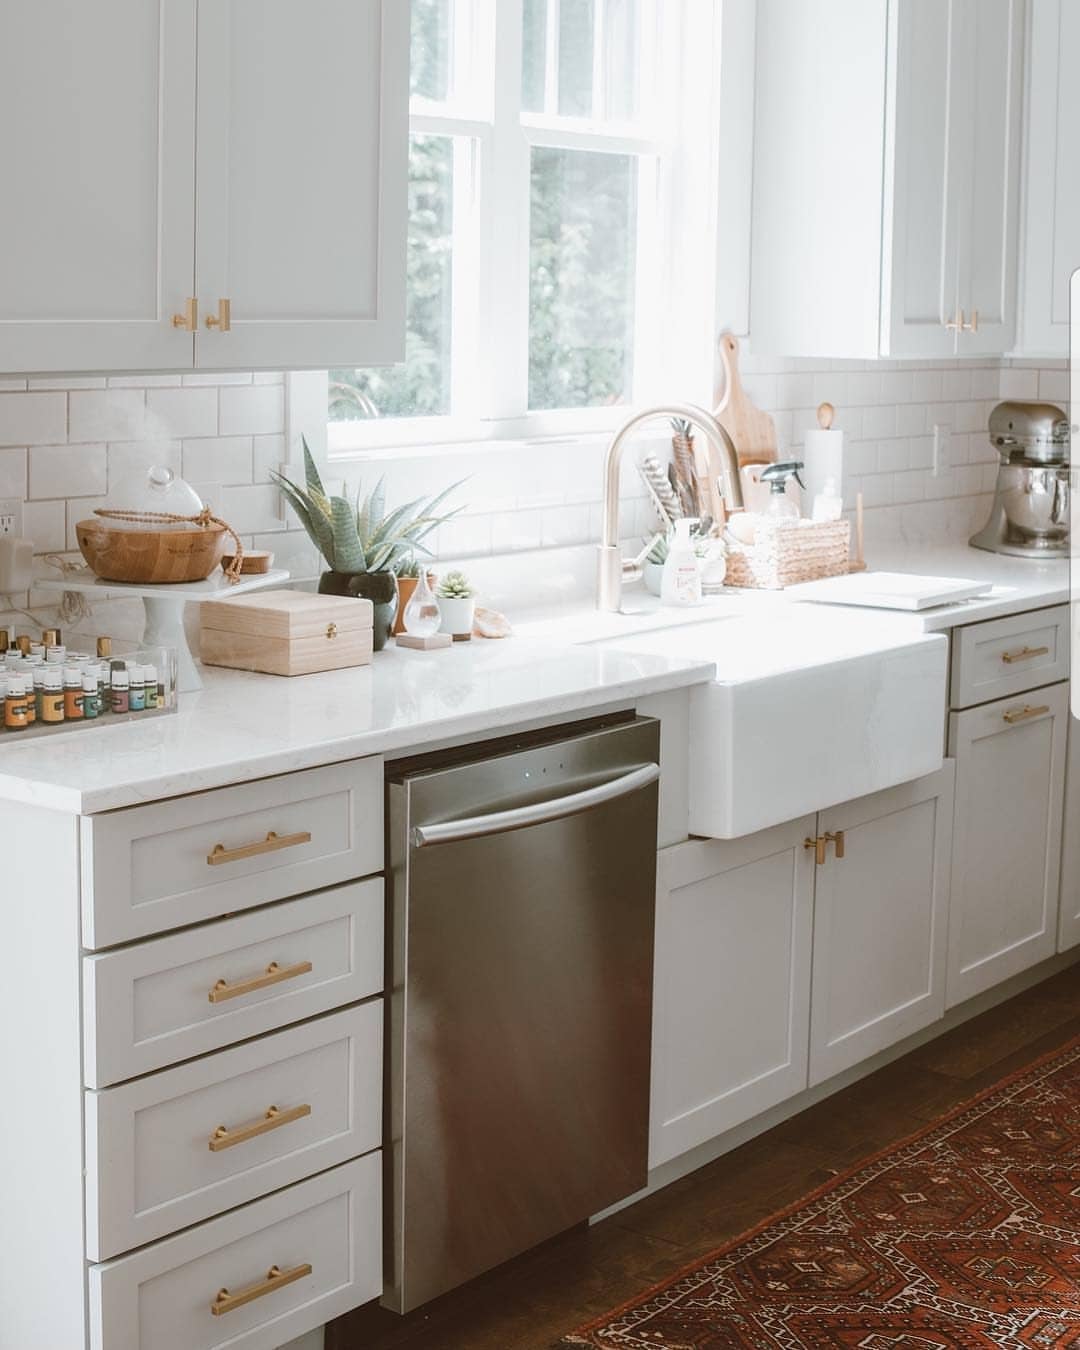 smart samsung dish washer in modern kitchen photo by Instagram user @samsunghomeappliances